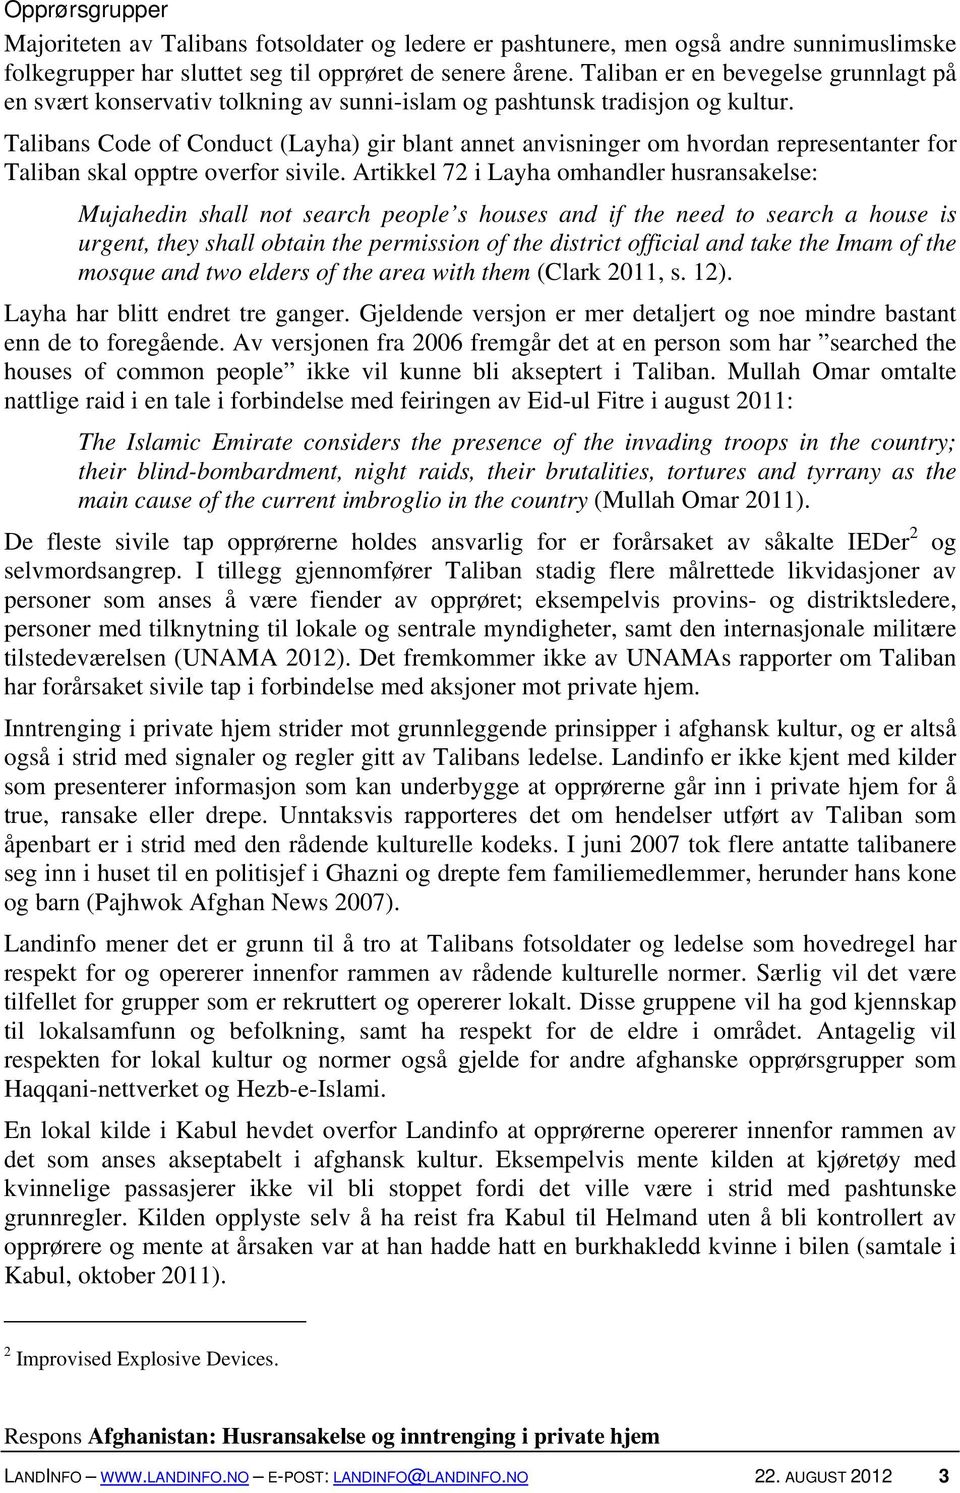 Talibans Code of Conduct (Layha) gir blant annet anvisninger om hvordan representanter for Taliban skal opptre overfor sivile.